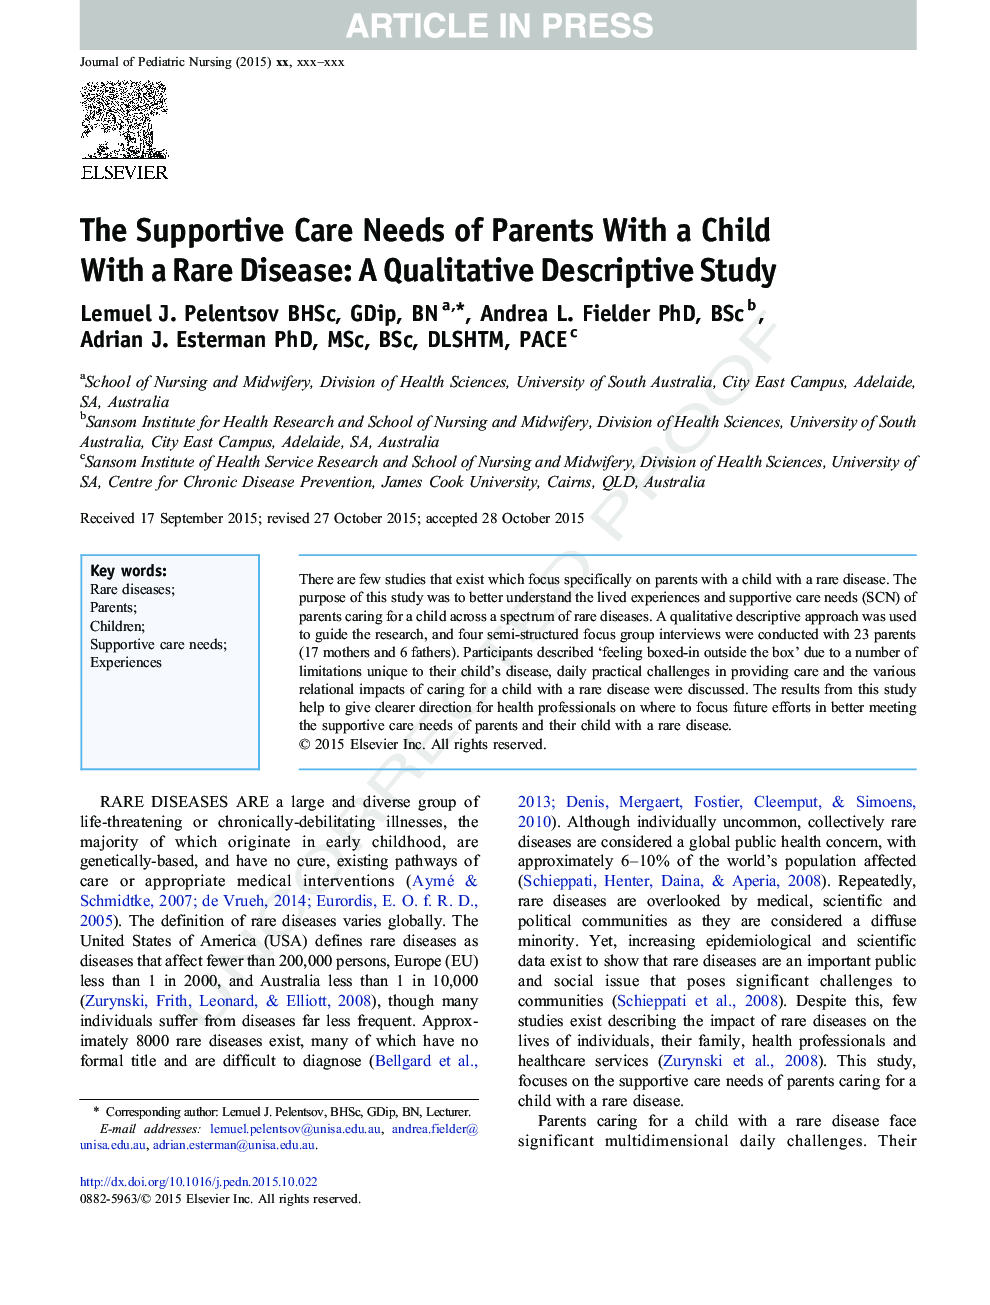 نیازهای مراقبت حمایتی والدین با کودک مبتلا به بیماری های نادر: یک مطالعه توصیفی کیفی 